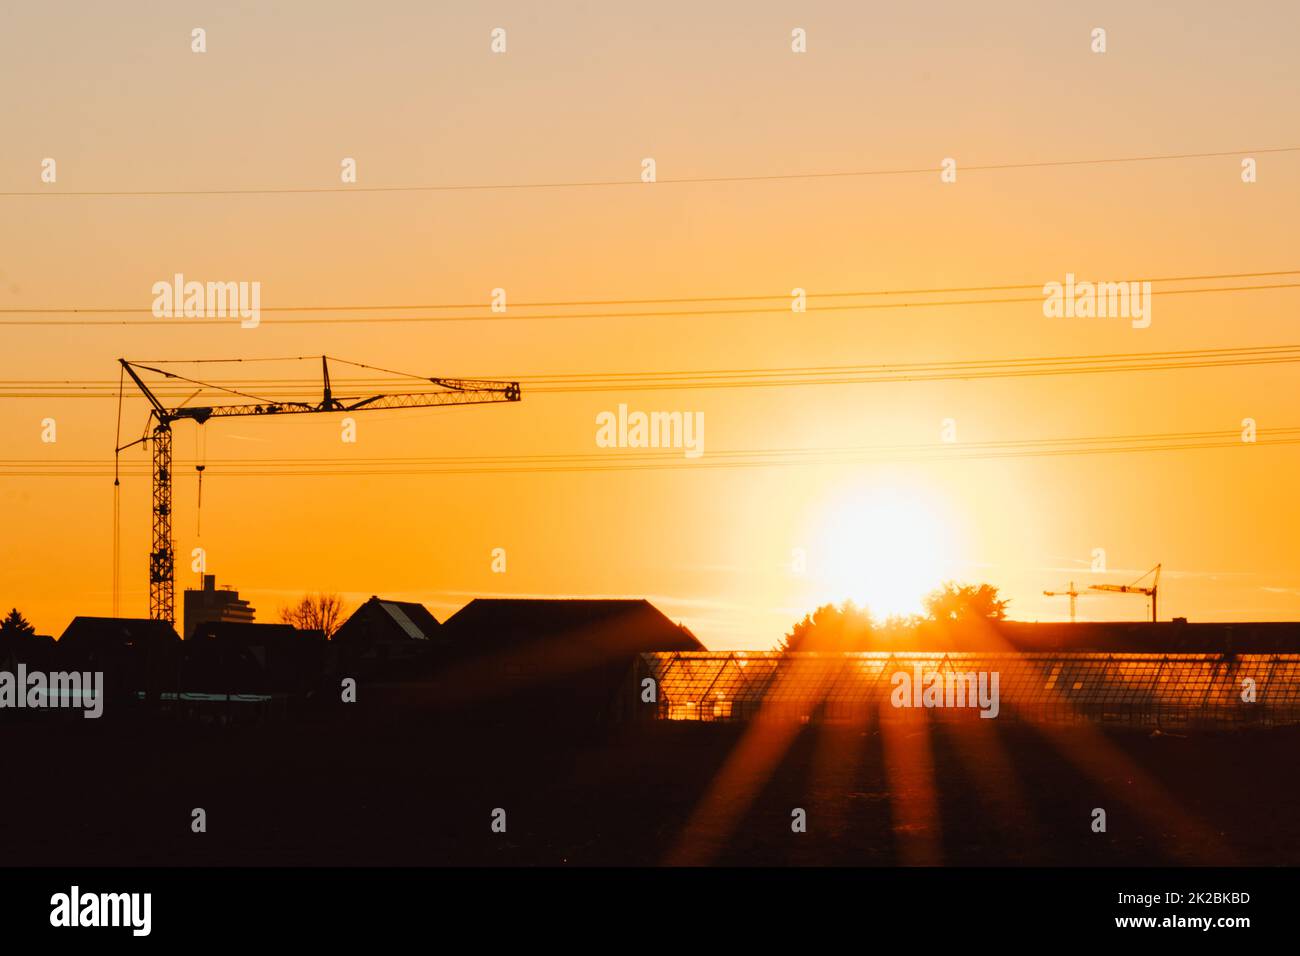 Die Silhouette eines hohen Baukrans in Orange zeigt den Sonnenuntergang auf der Baustelle mit Bauarbeiten für moderne Gebäude und Stadtentwicklung als architektonisches Teamwork für Hochspannungsleitungen von Wolkenkratzern Stockfoto